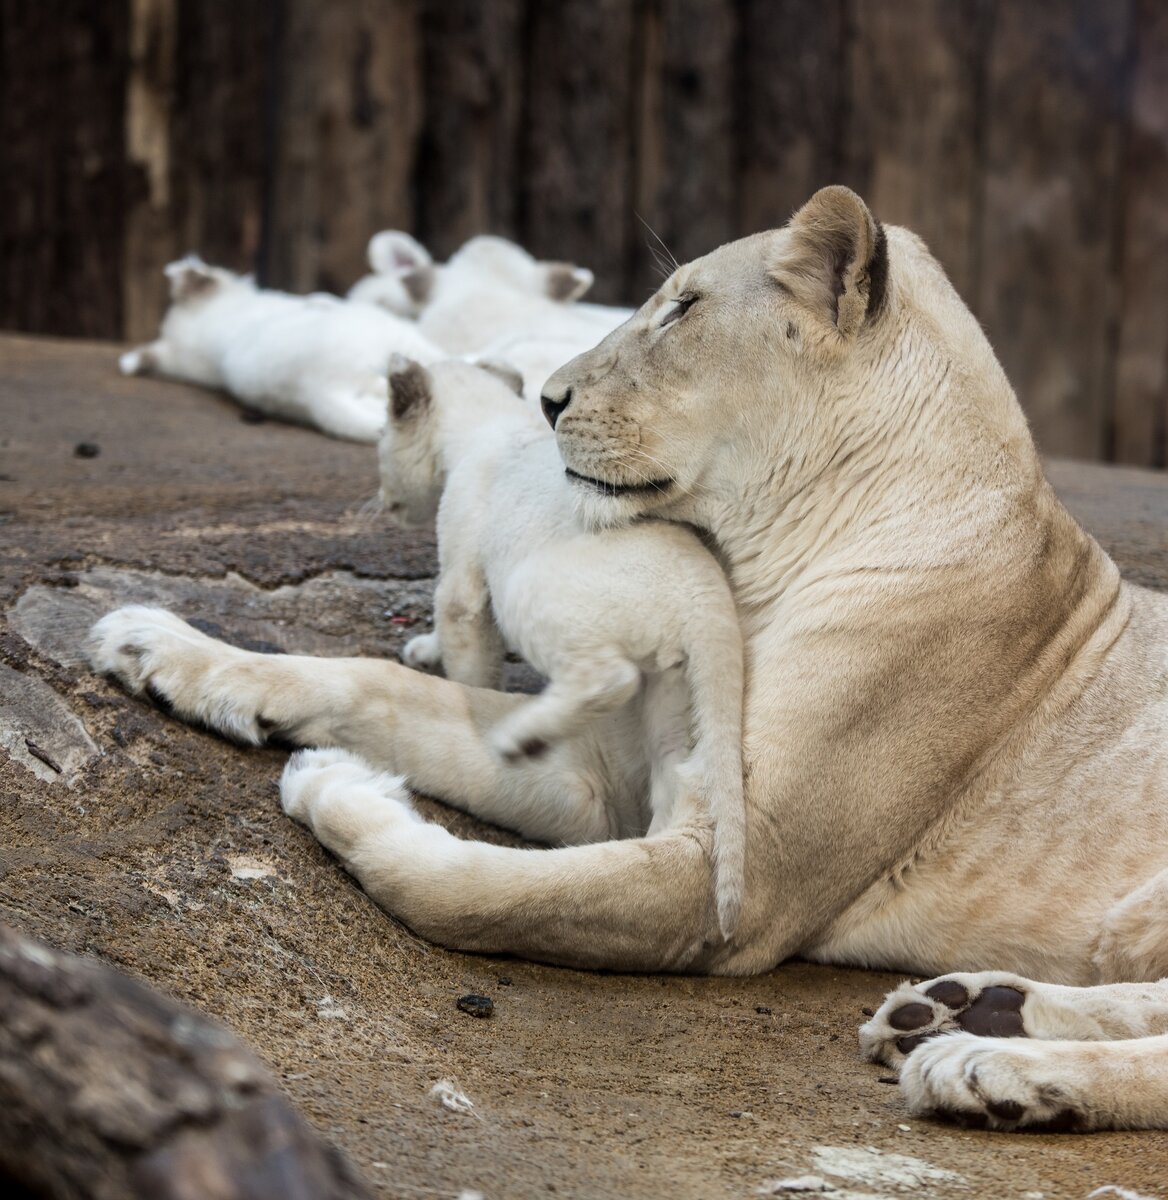   Белый лев не является отдельным подвидом. Это специфический полиморфизм с генетическим заболеванием — лейкизмом, вызывающим более светлую окраску шерсти, чем у обычных львов.